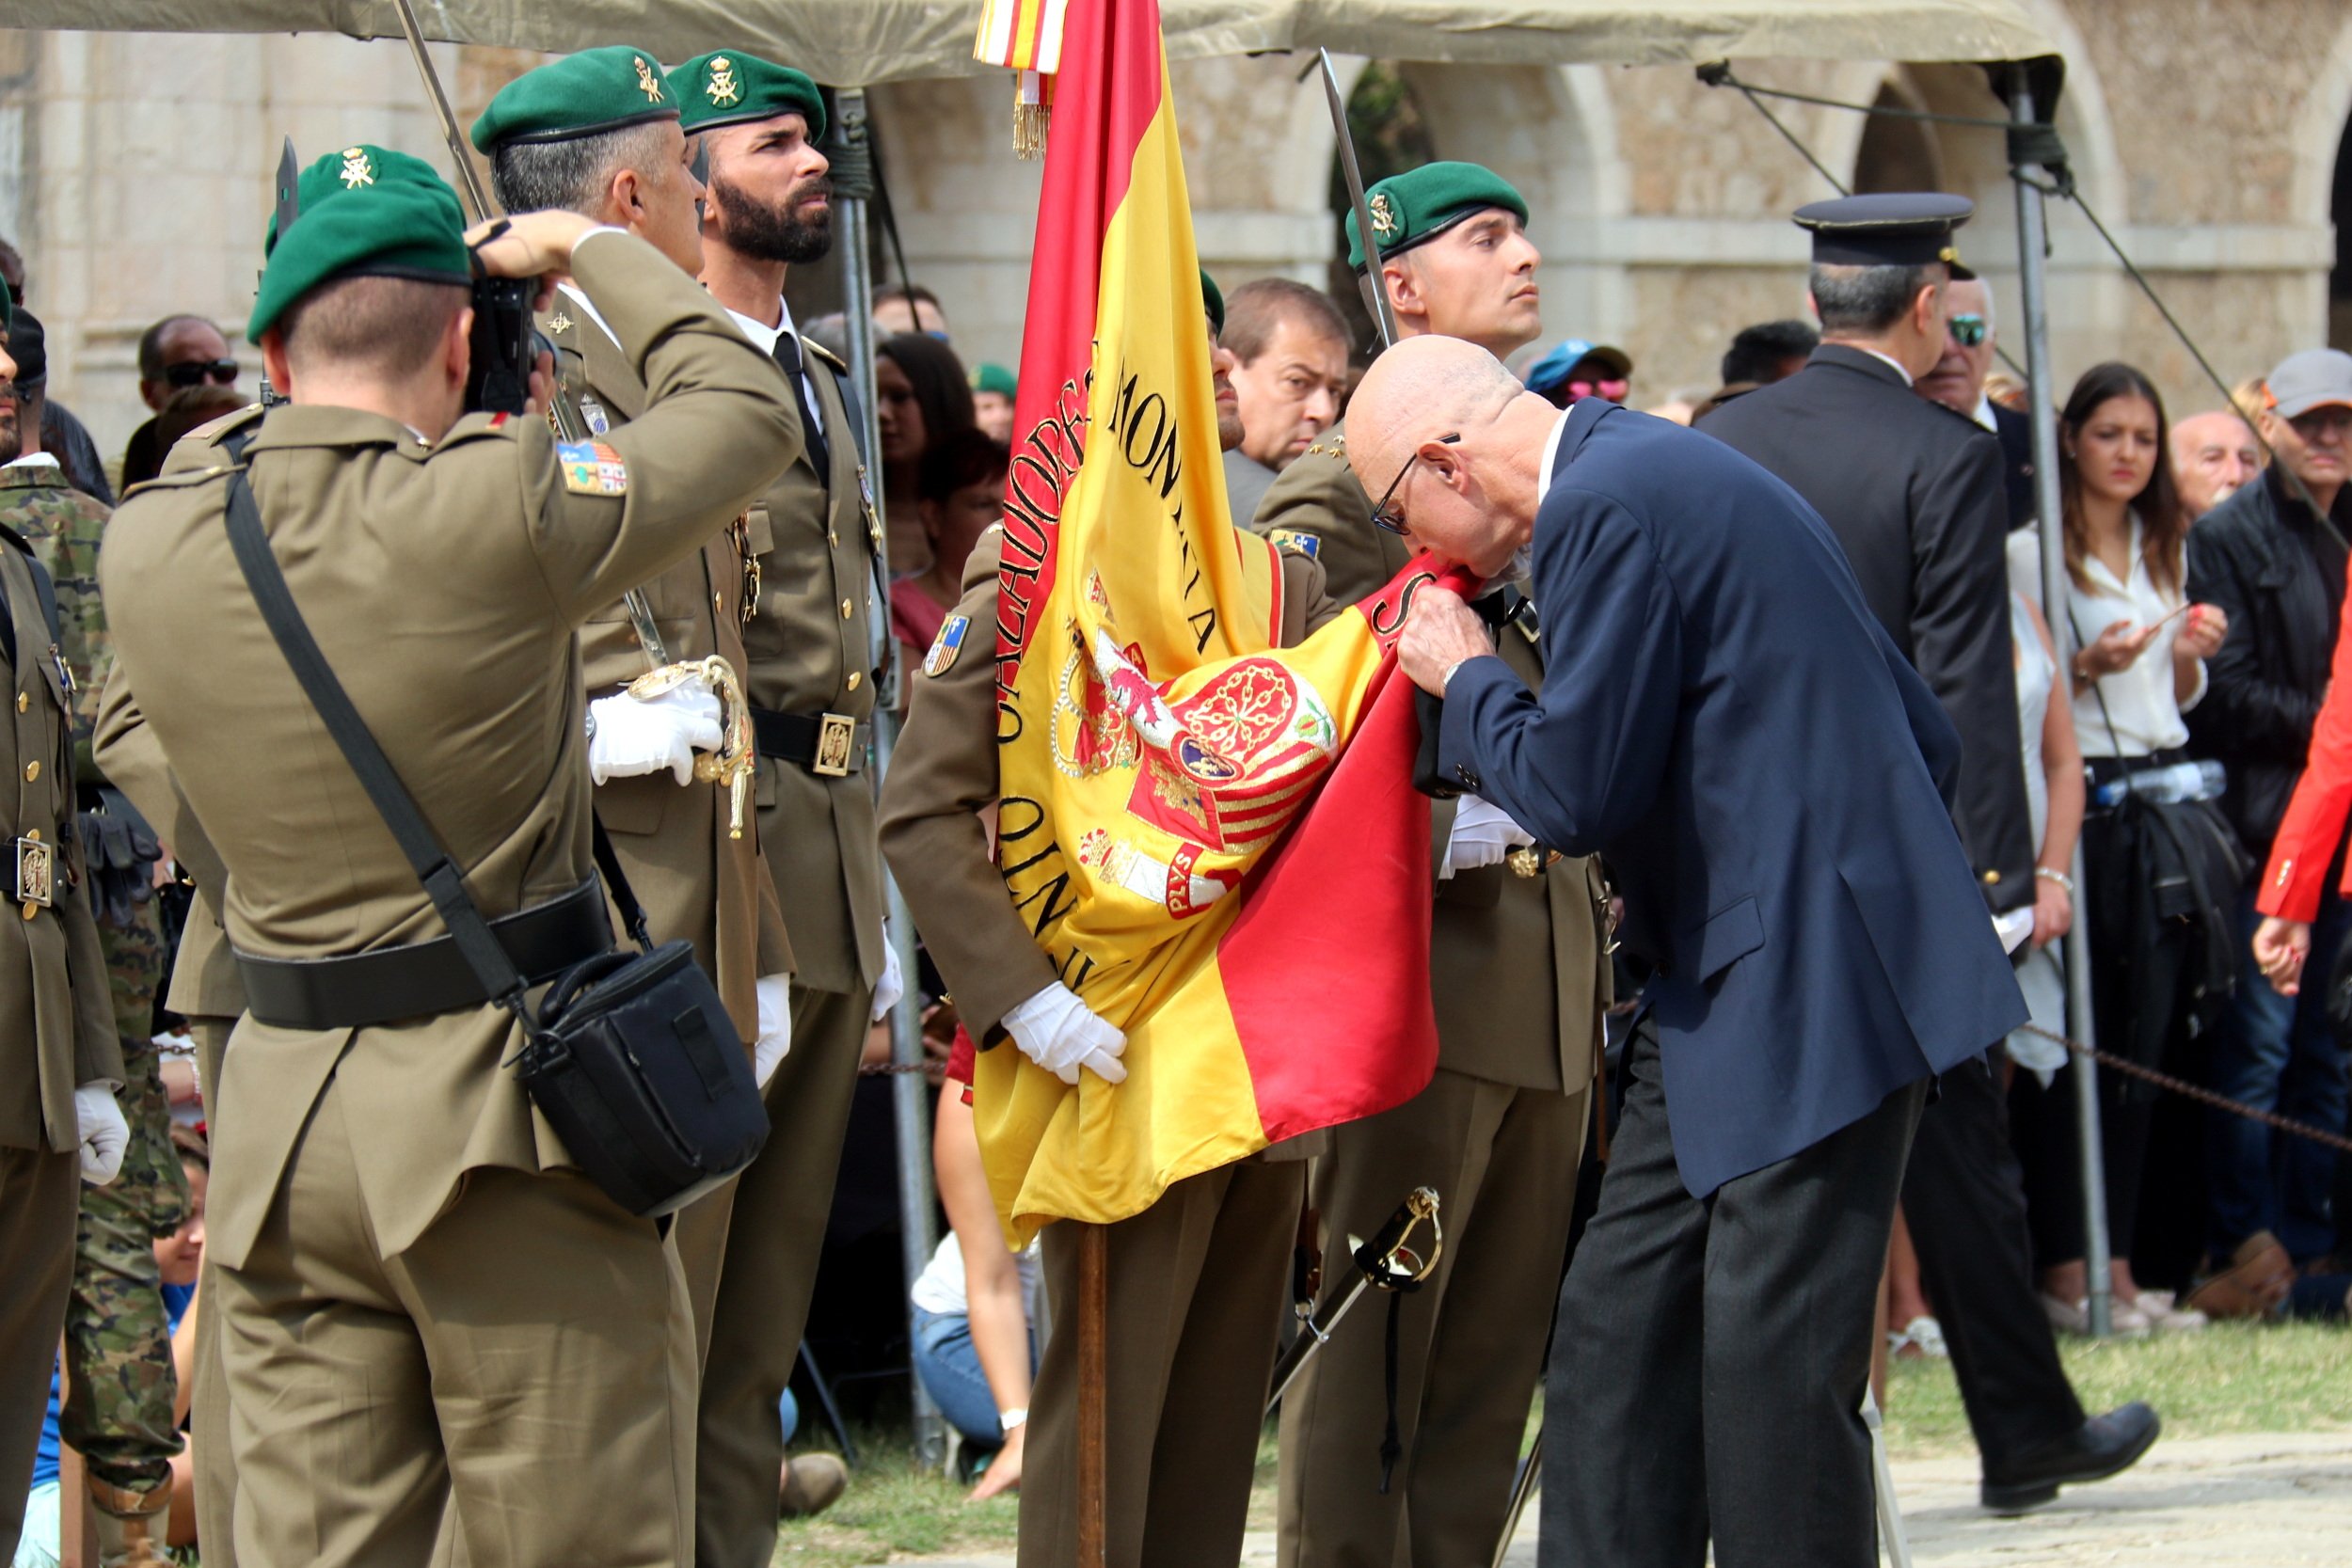 El Ejército organiza una jura civil de bandera en el castillo de Sant Ferran de Figueres 5 años después